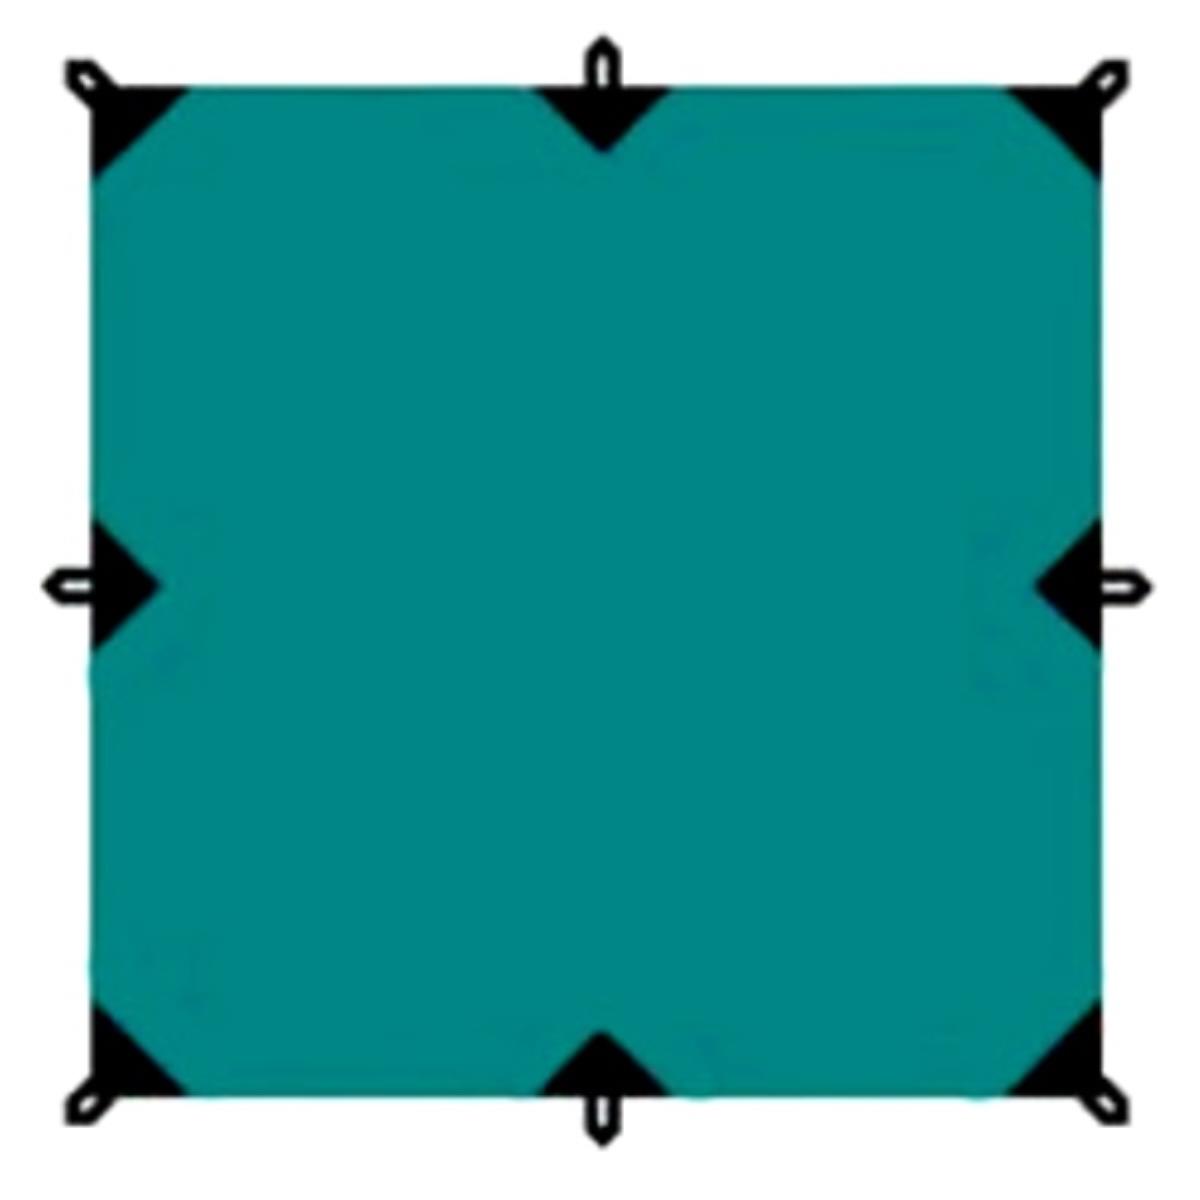 Тент 3*3 TRT-100.04 Tramp тент для садовый качелей полиэстер 210x145 см цвет зеленый